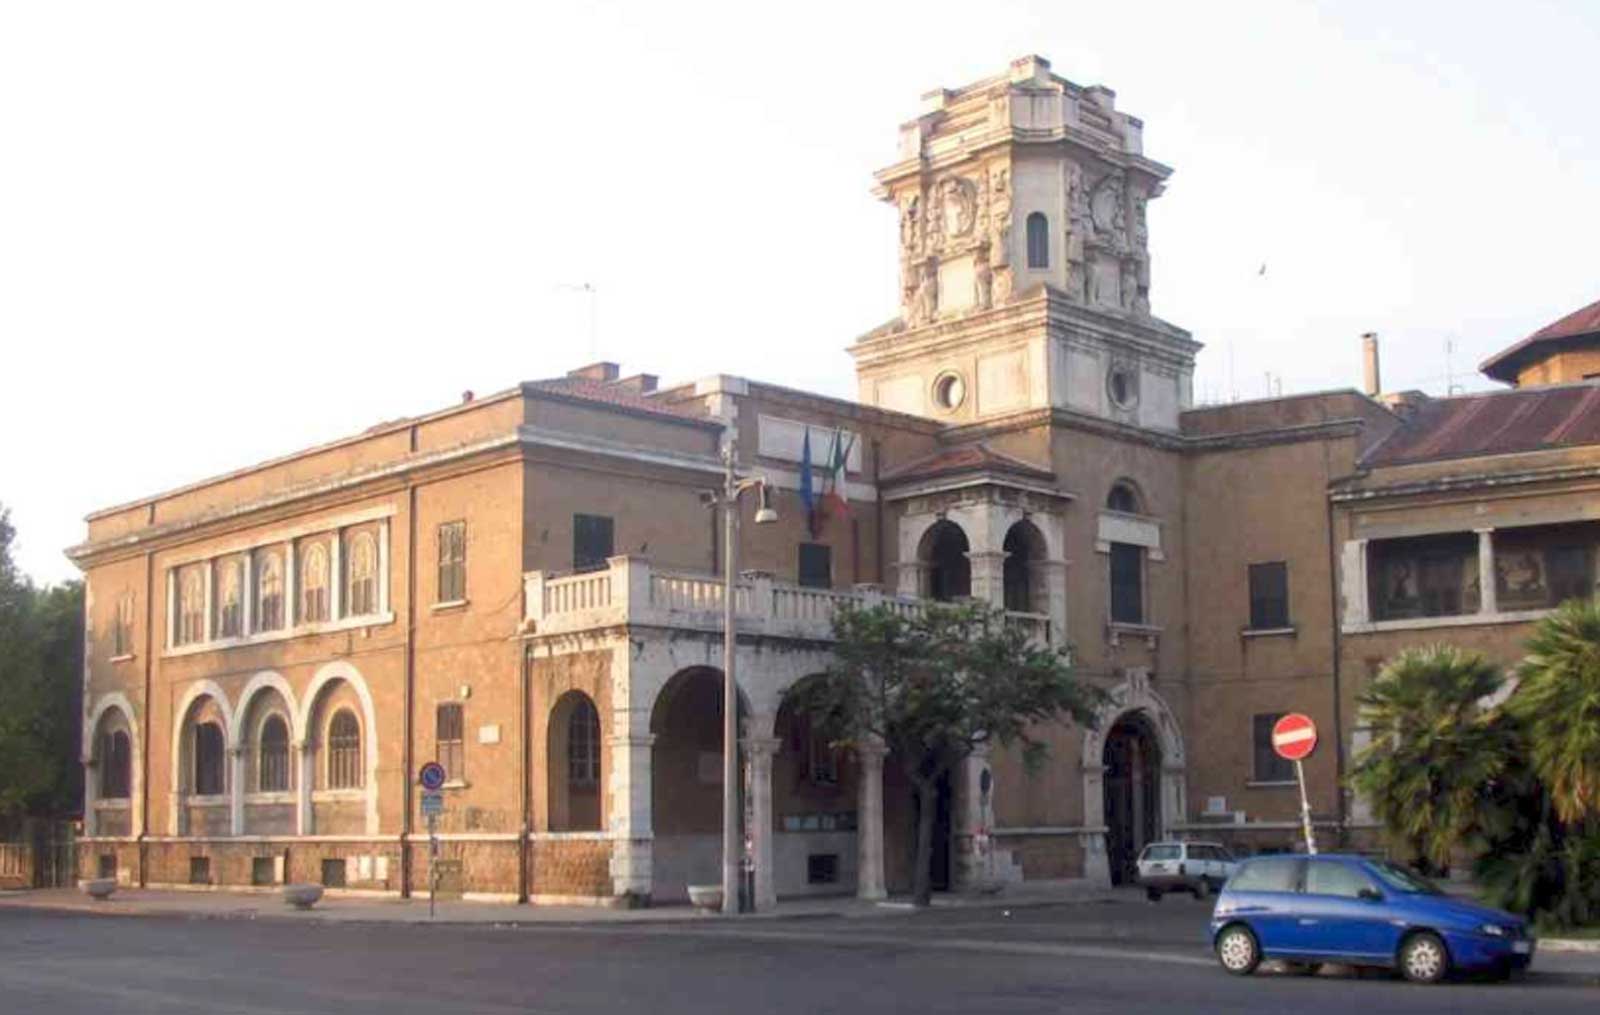 La sede del X Municipio - Ostia di Roma Capitale, foto della sede principale